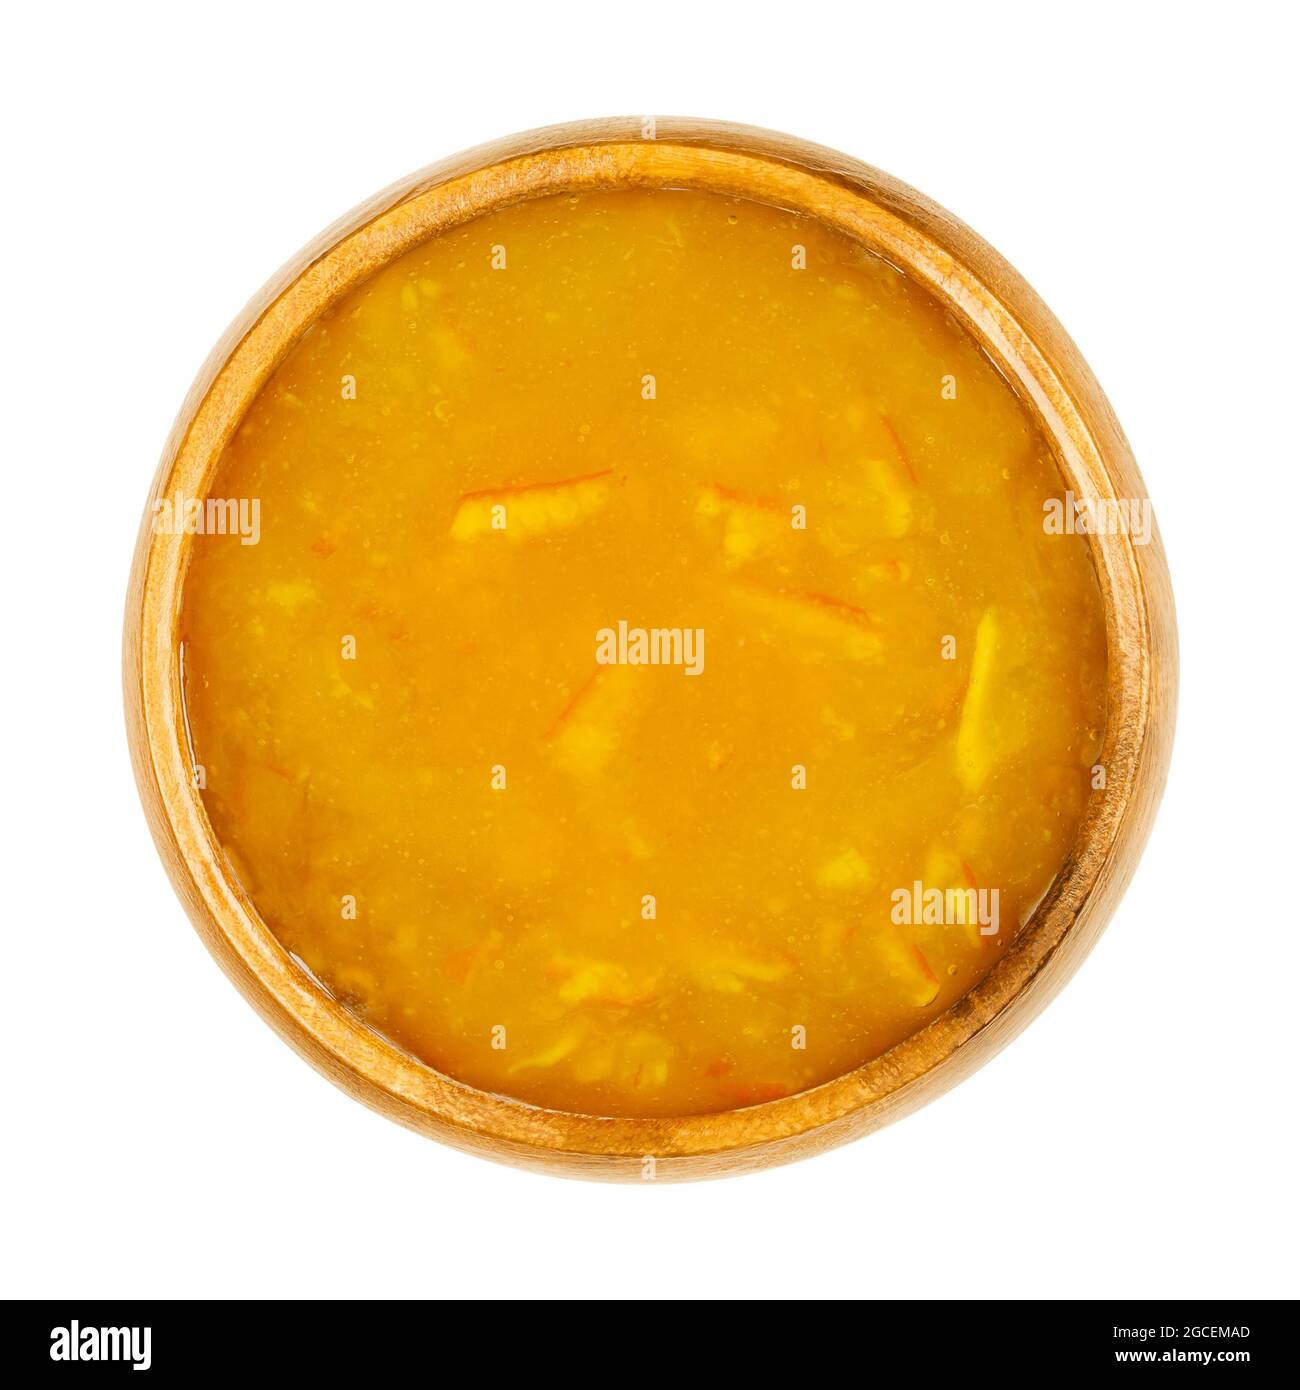 Confiture d'orange, dans un bol en bois. Marmelade d'orange, un pain doux et légèrement amer, fait d'oranges cuites, de sucre et de pectine. Banque D'Images